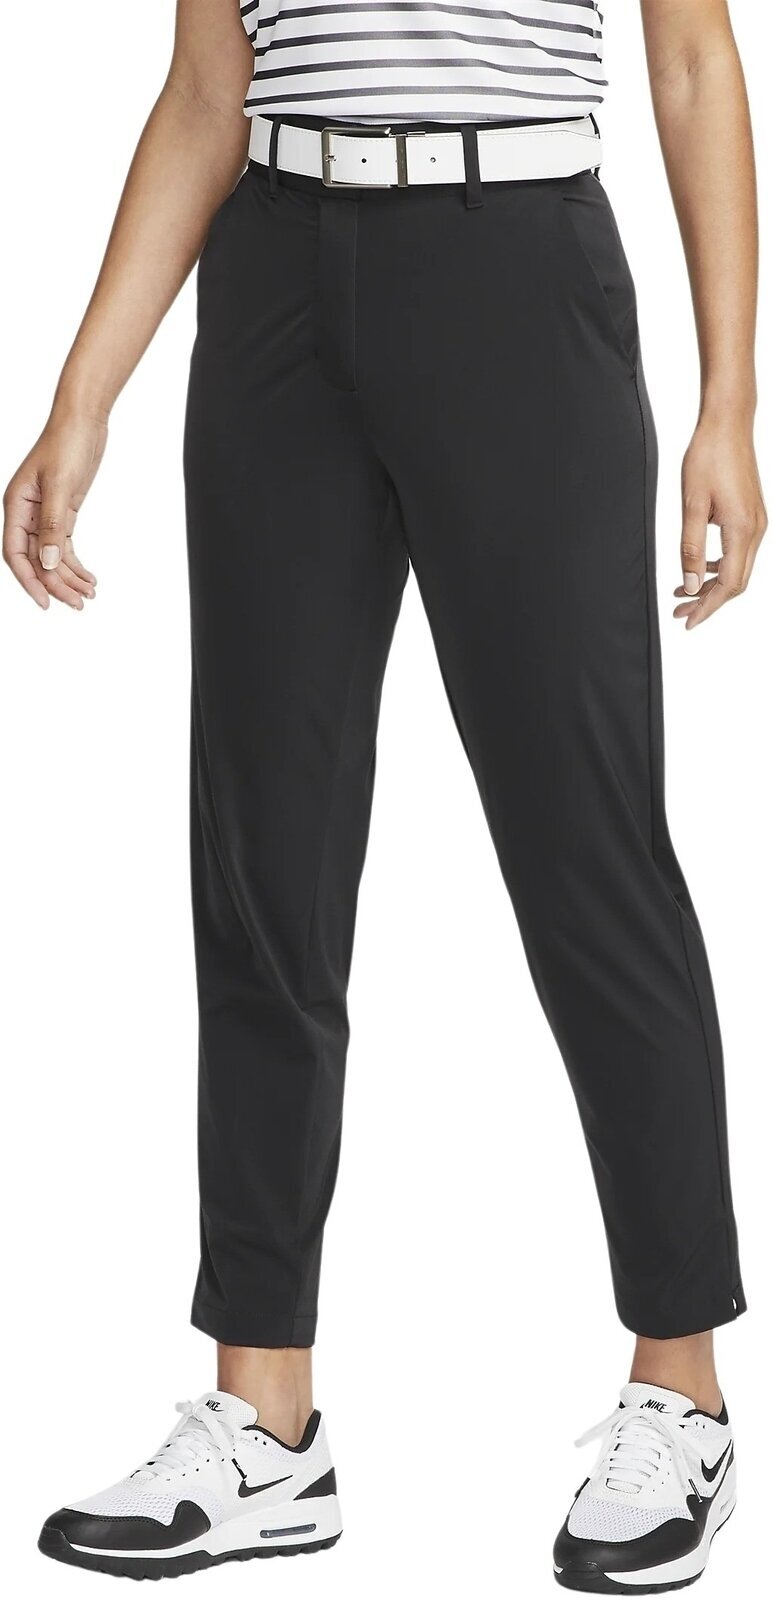 Kalhoty Nike Dri-Fit Tour Womens Pants Black/White M